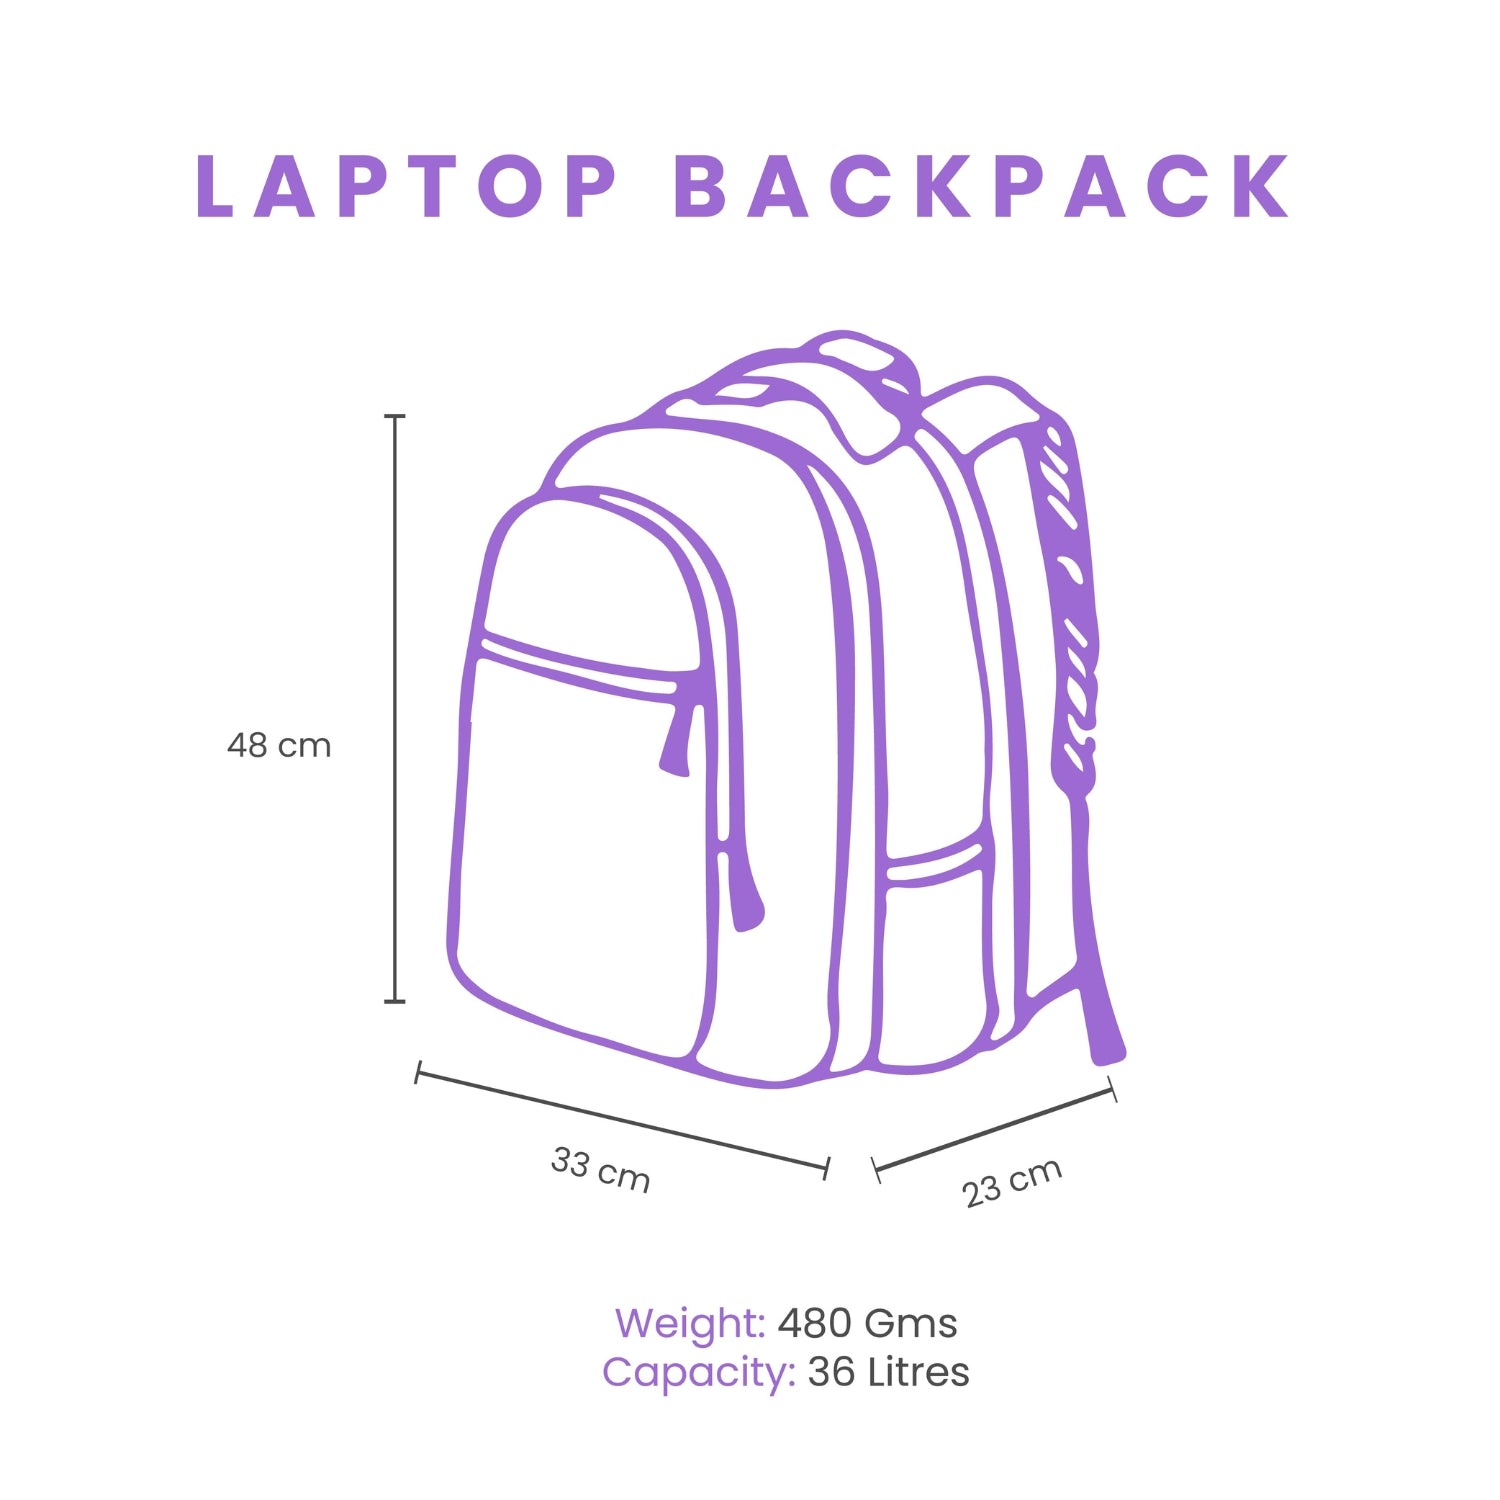 Sakura Laptop Backpack - Pink